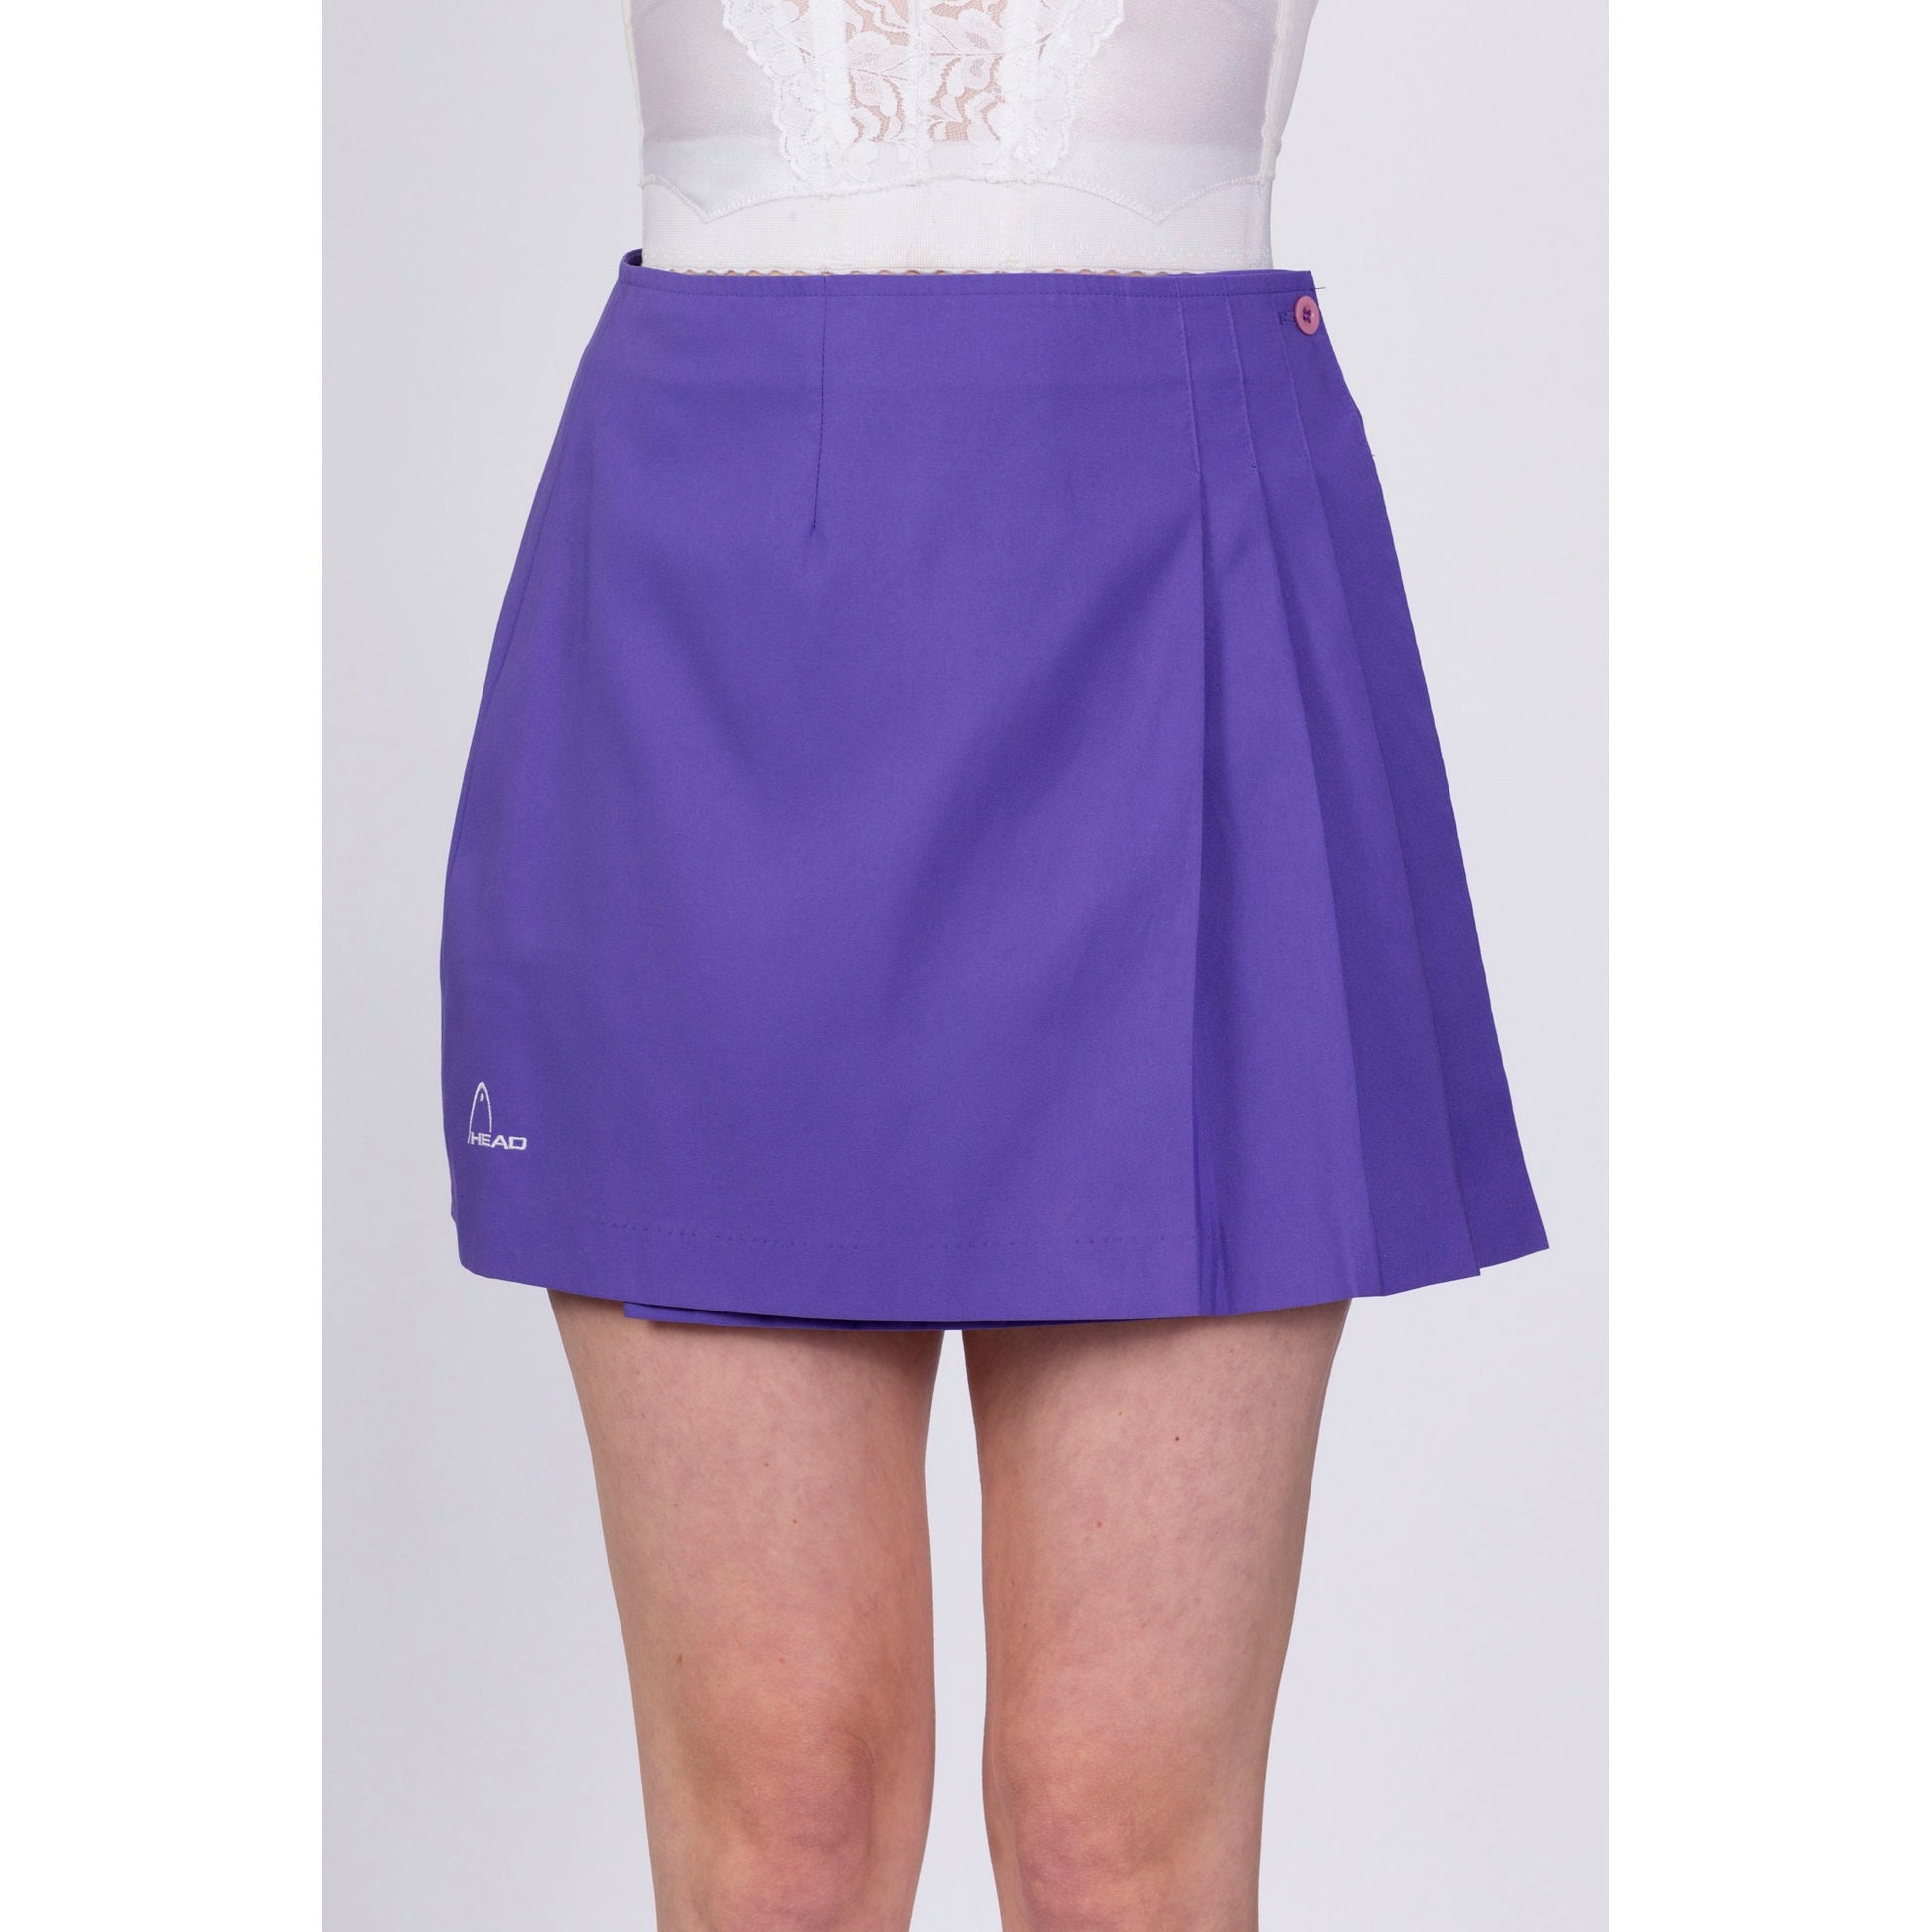 Vintage Purple Tennis Mini Skirt - Medium, 28" 